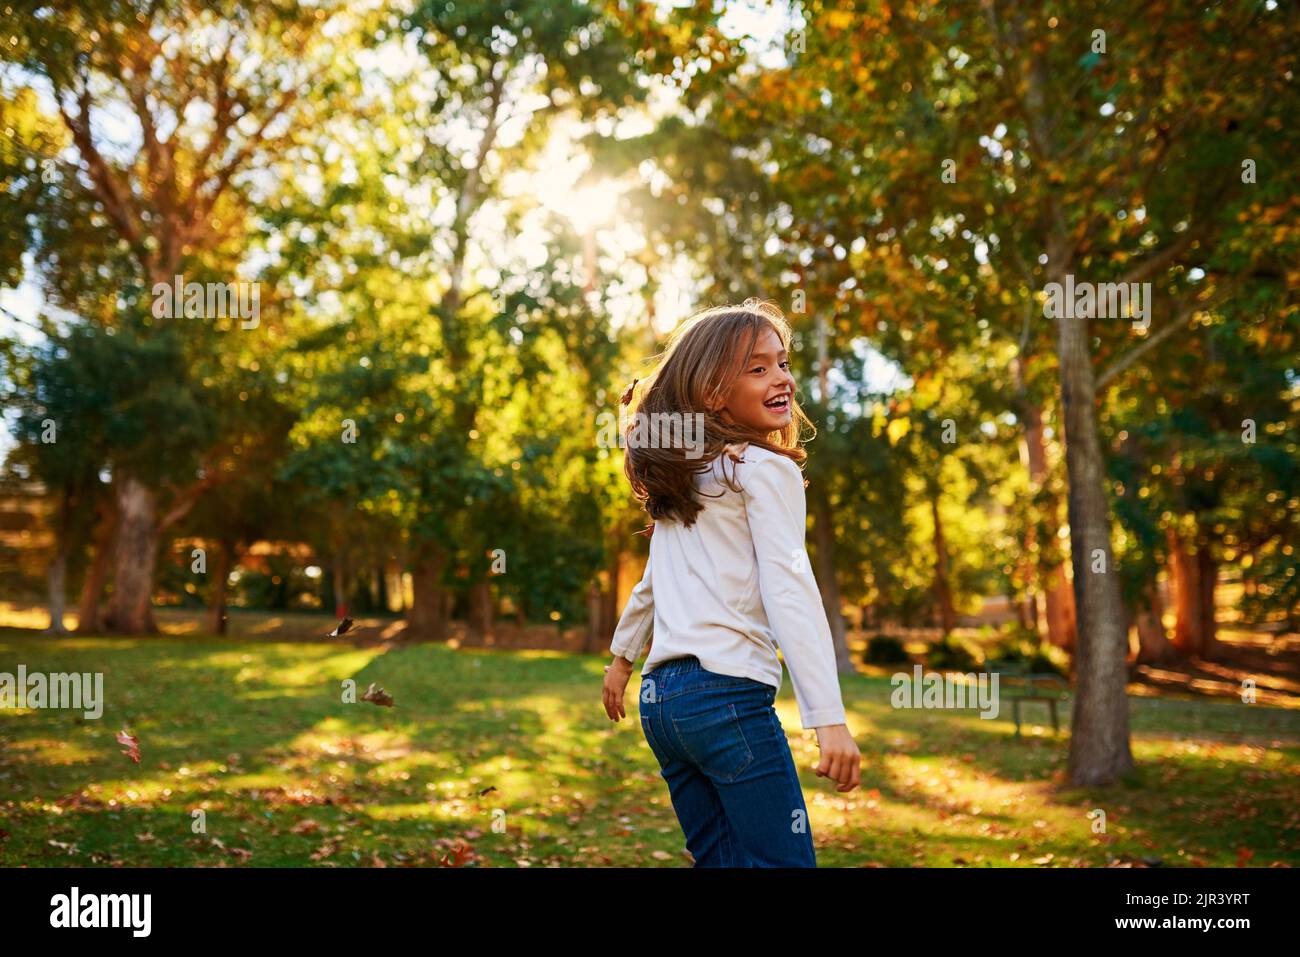 Les enfants rendent chaque moment spectaculaire. Une petite fille heureuse jouant à l'automne quitte l'extérieur. Banque D'Images